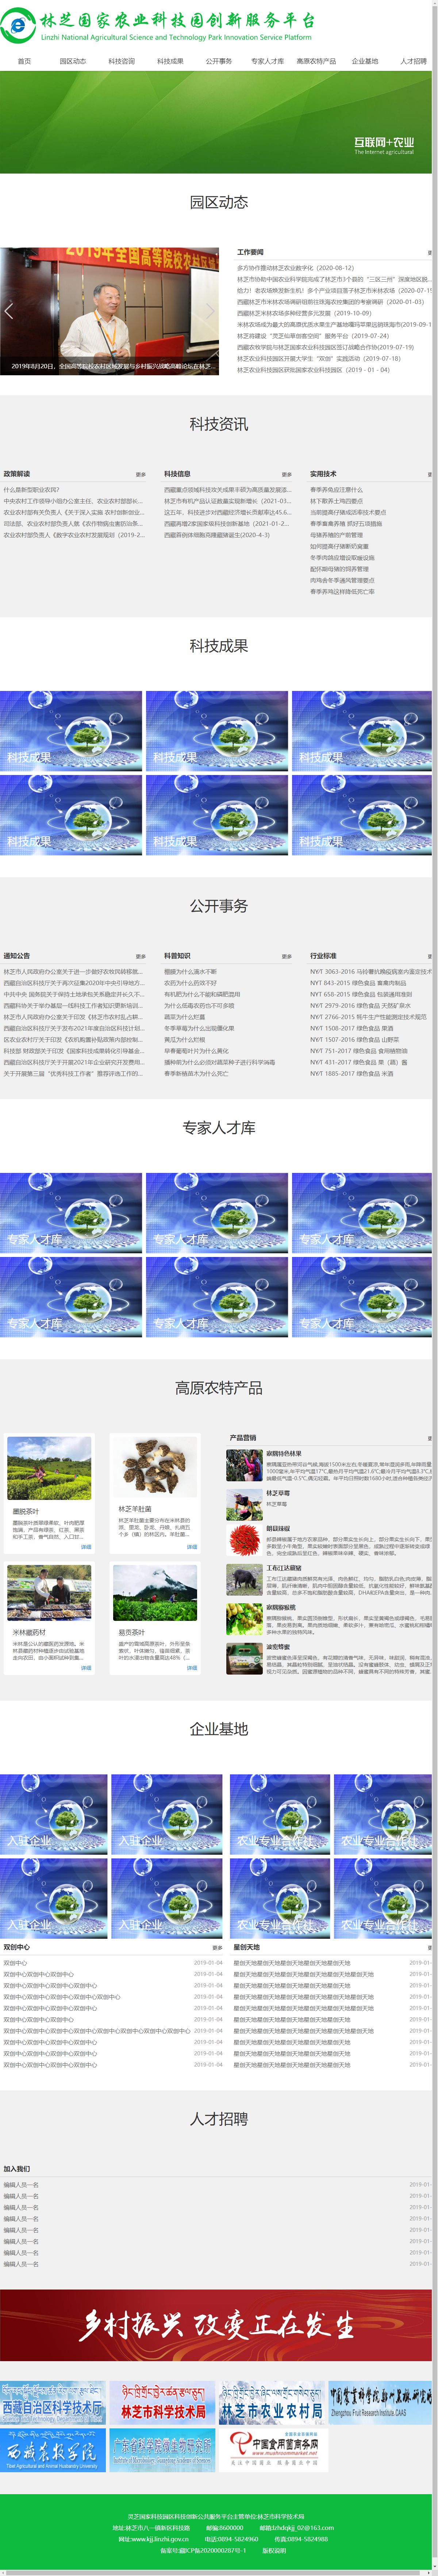 西藏林芝仙草生态农牧科技有限公司网站案例